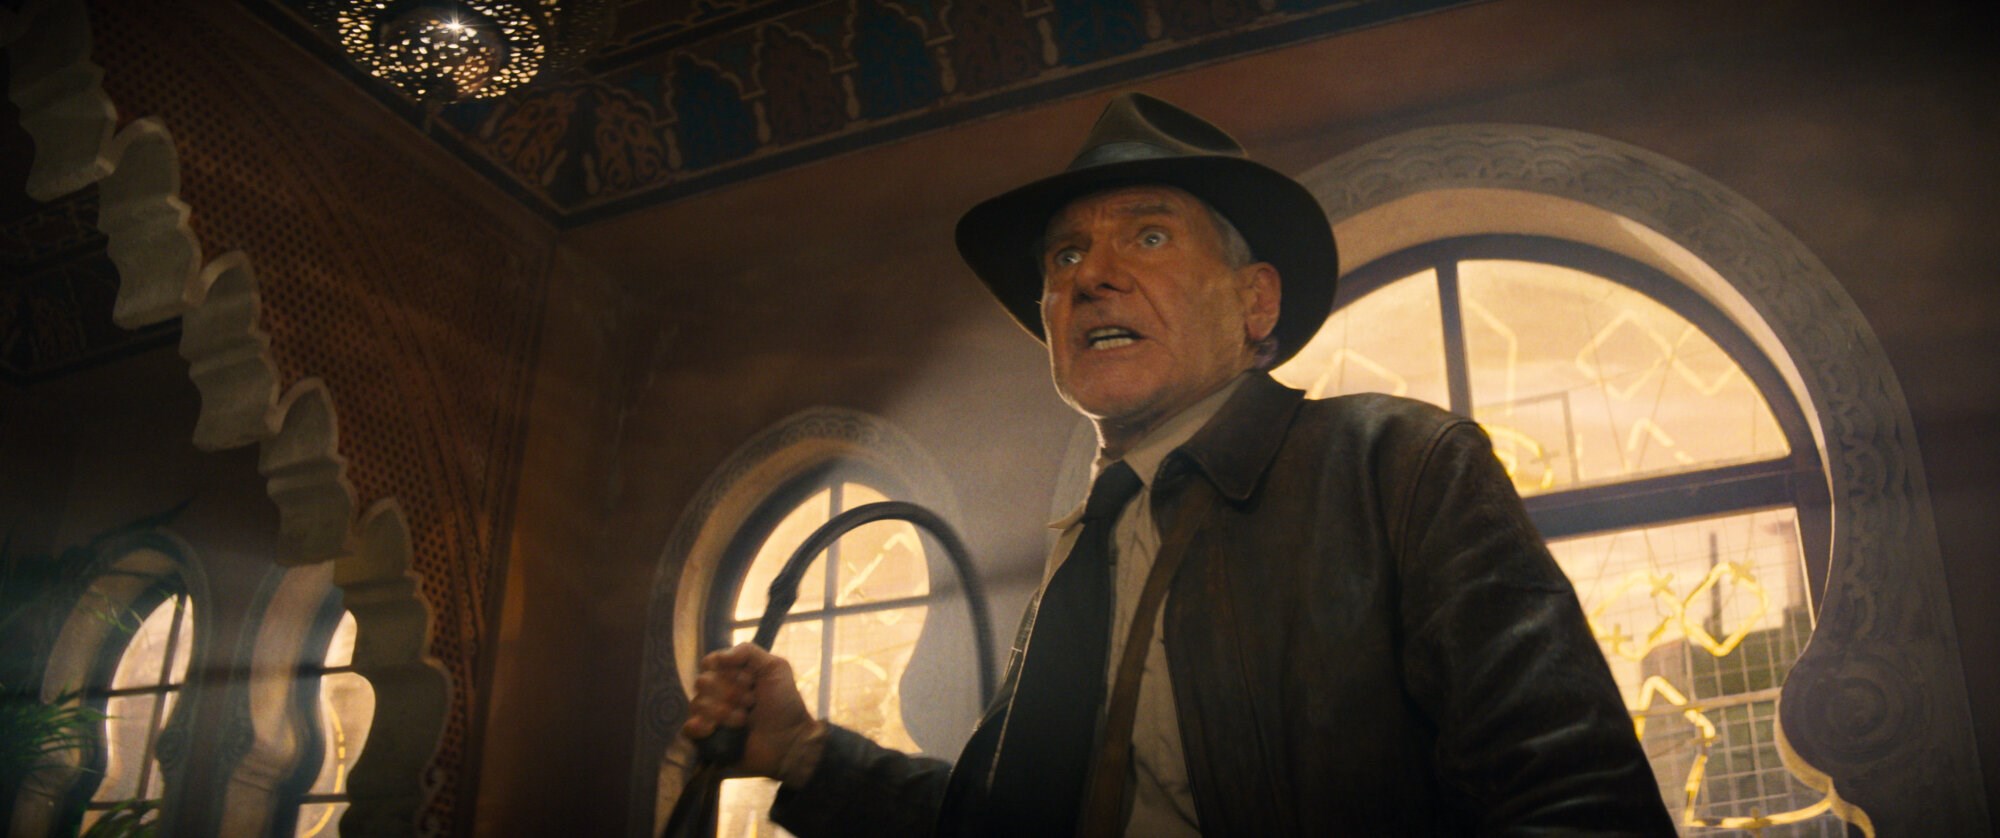 Indiana Jones ledobta a gyeplőt és eldobta az agyát, de annyi baj legyen